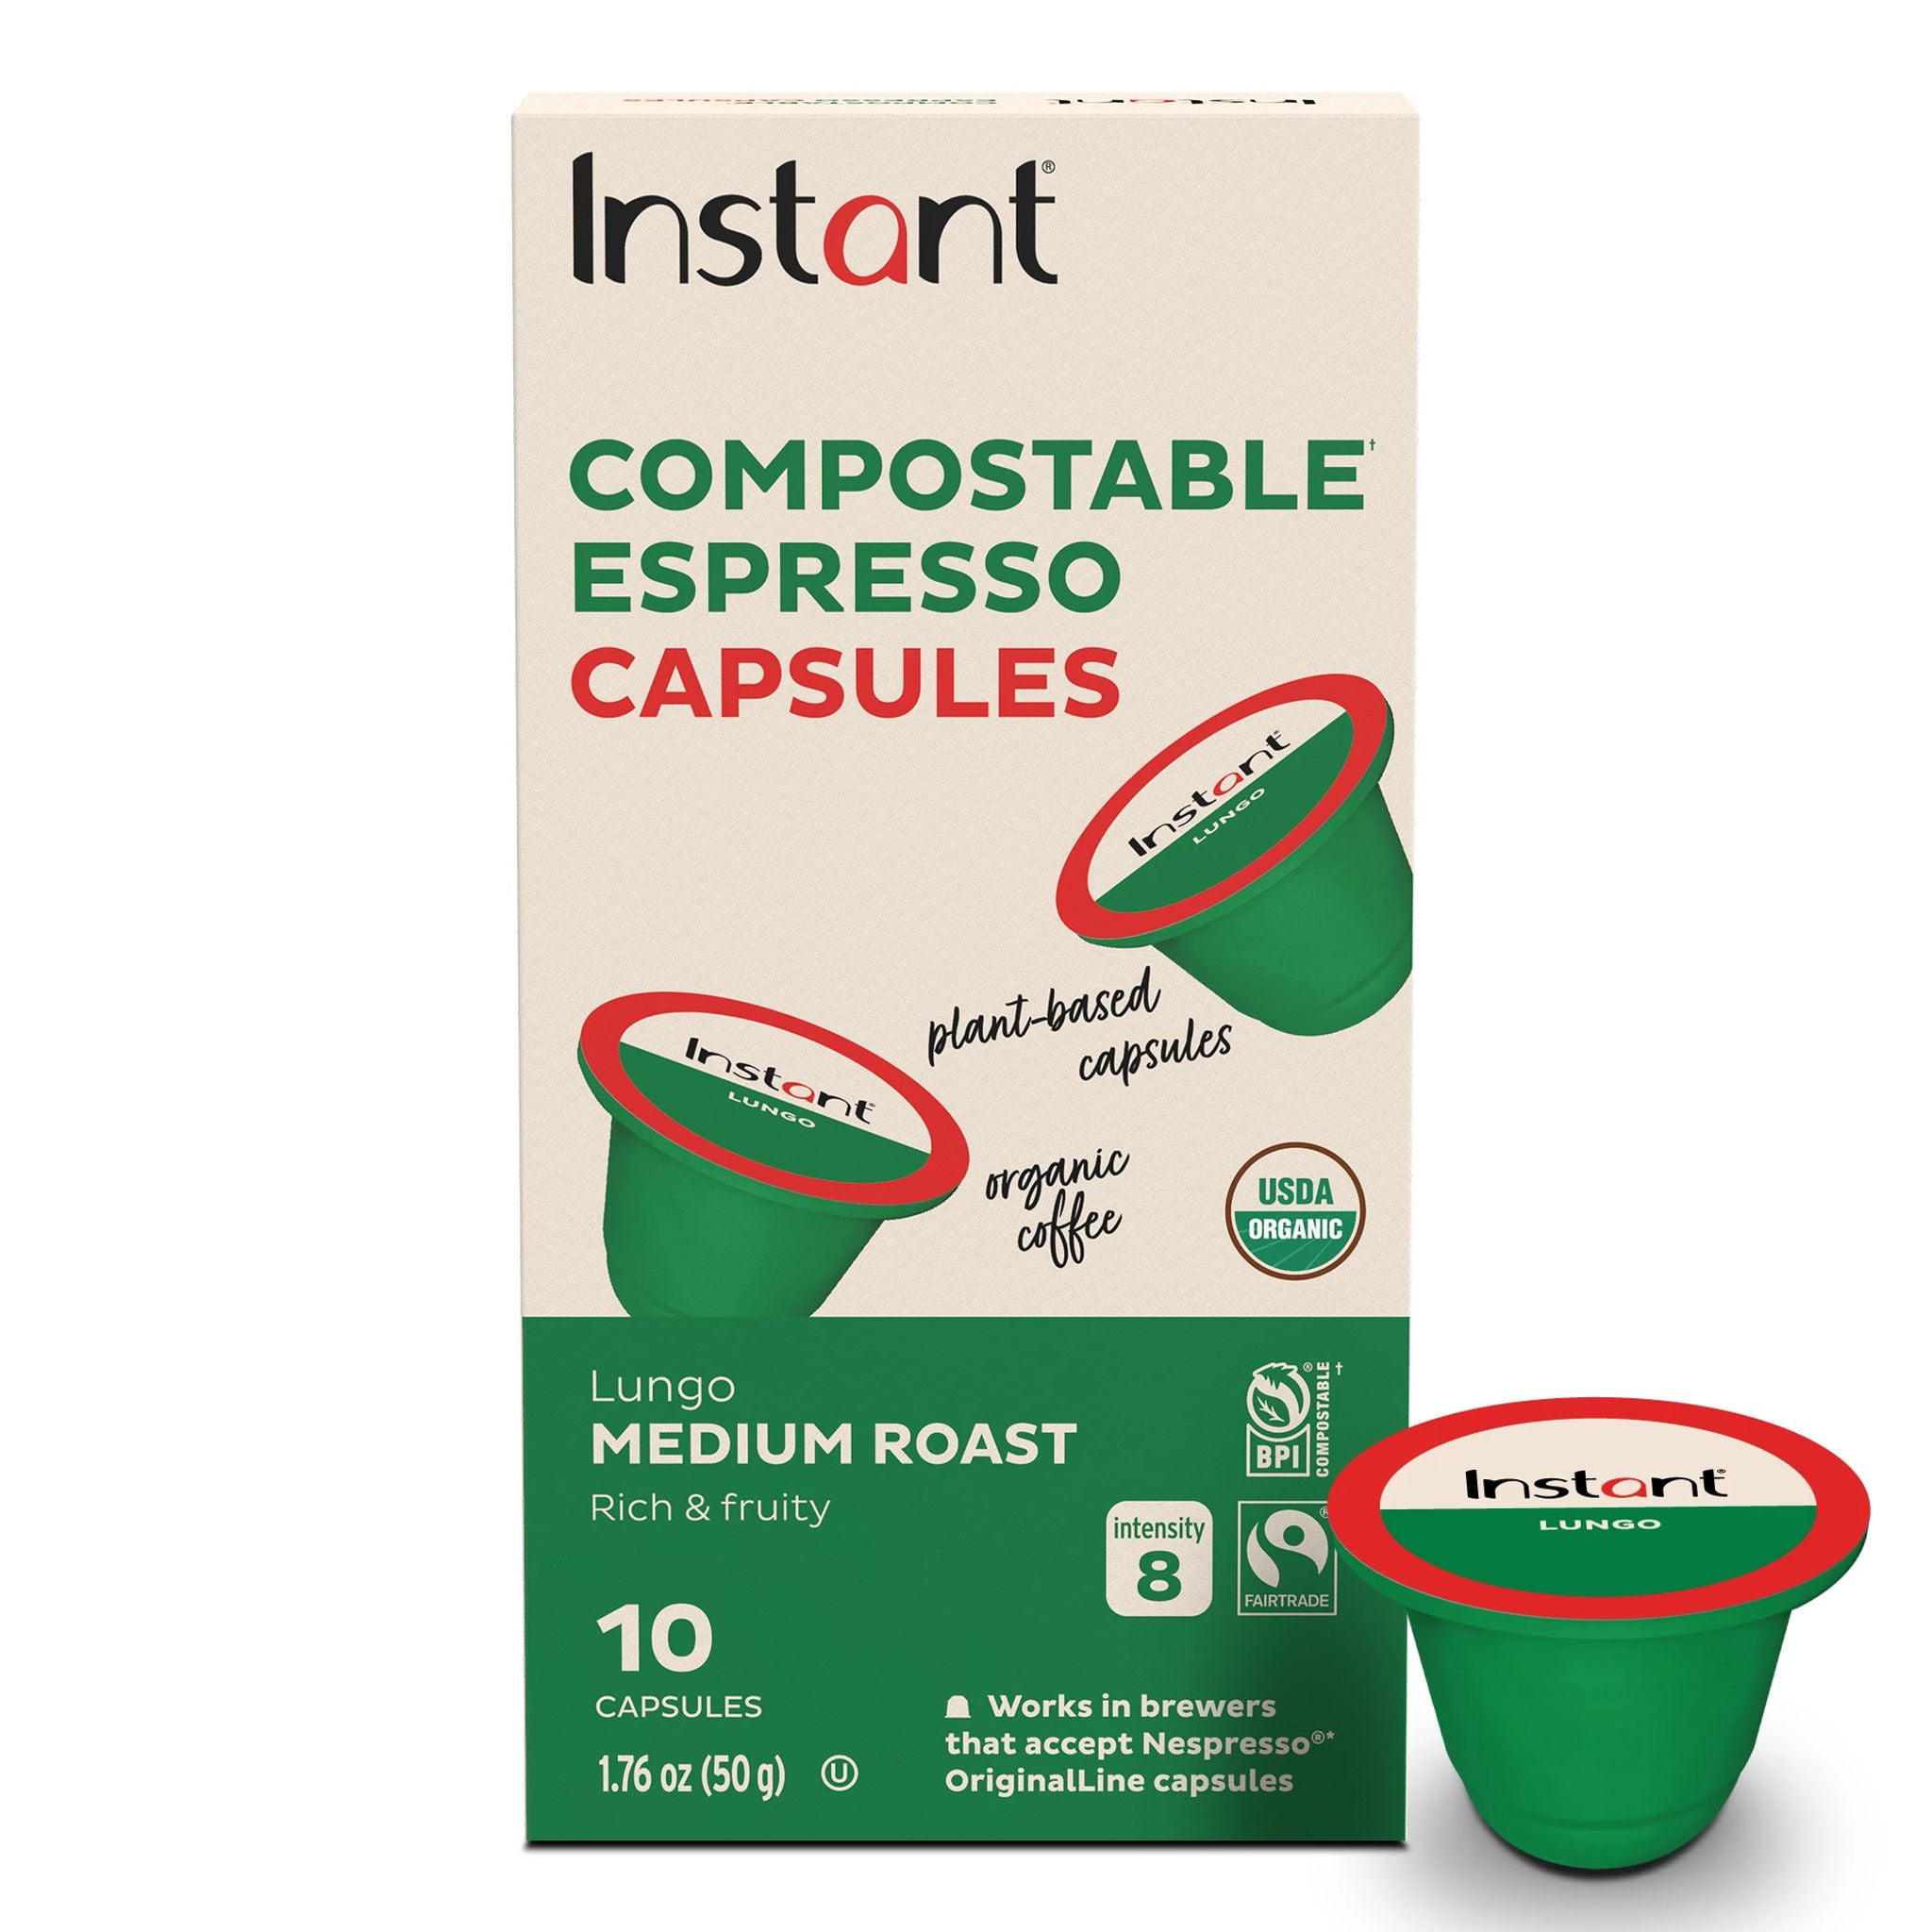 Instant® Compostable Espresso Capsules, Lungo Medium Roast, 10 capsules